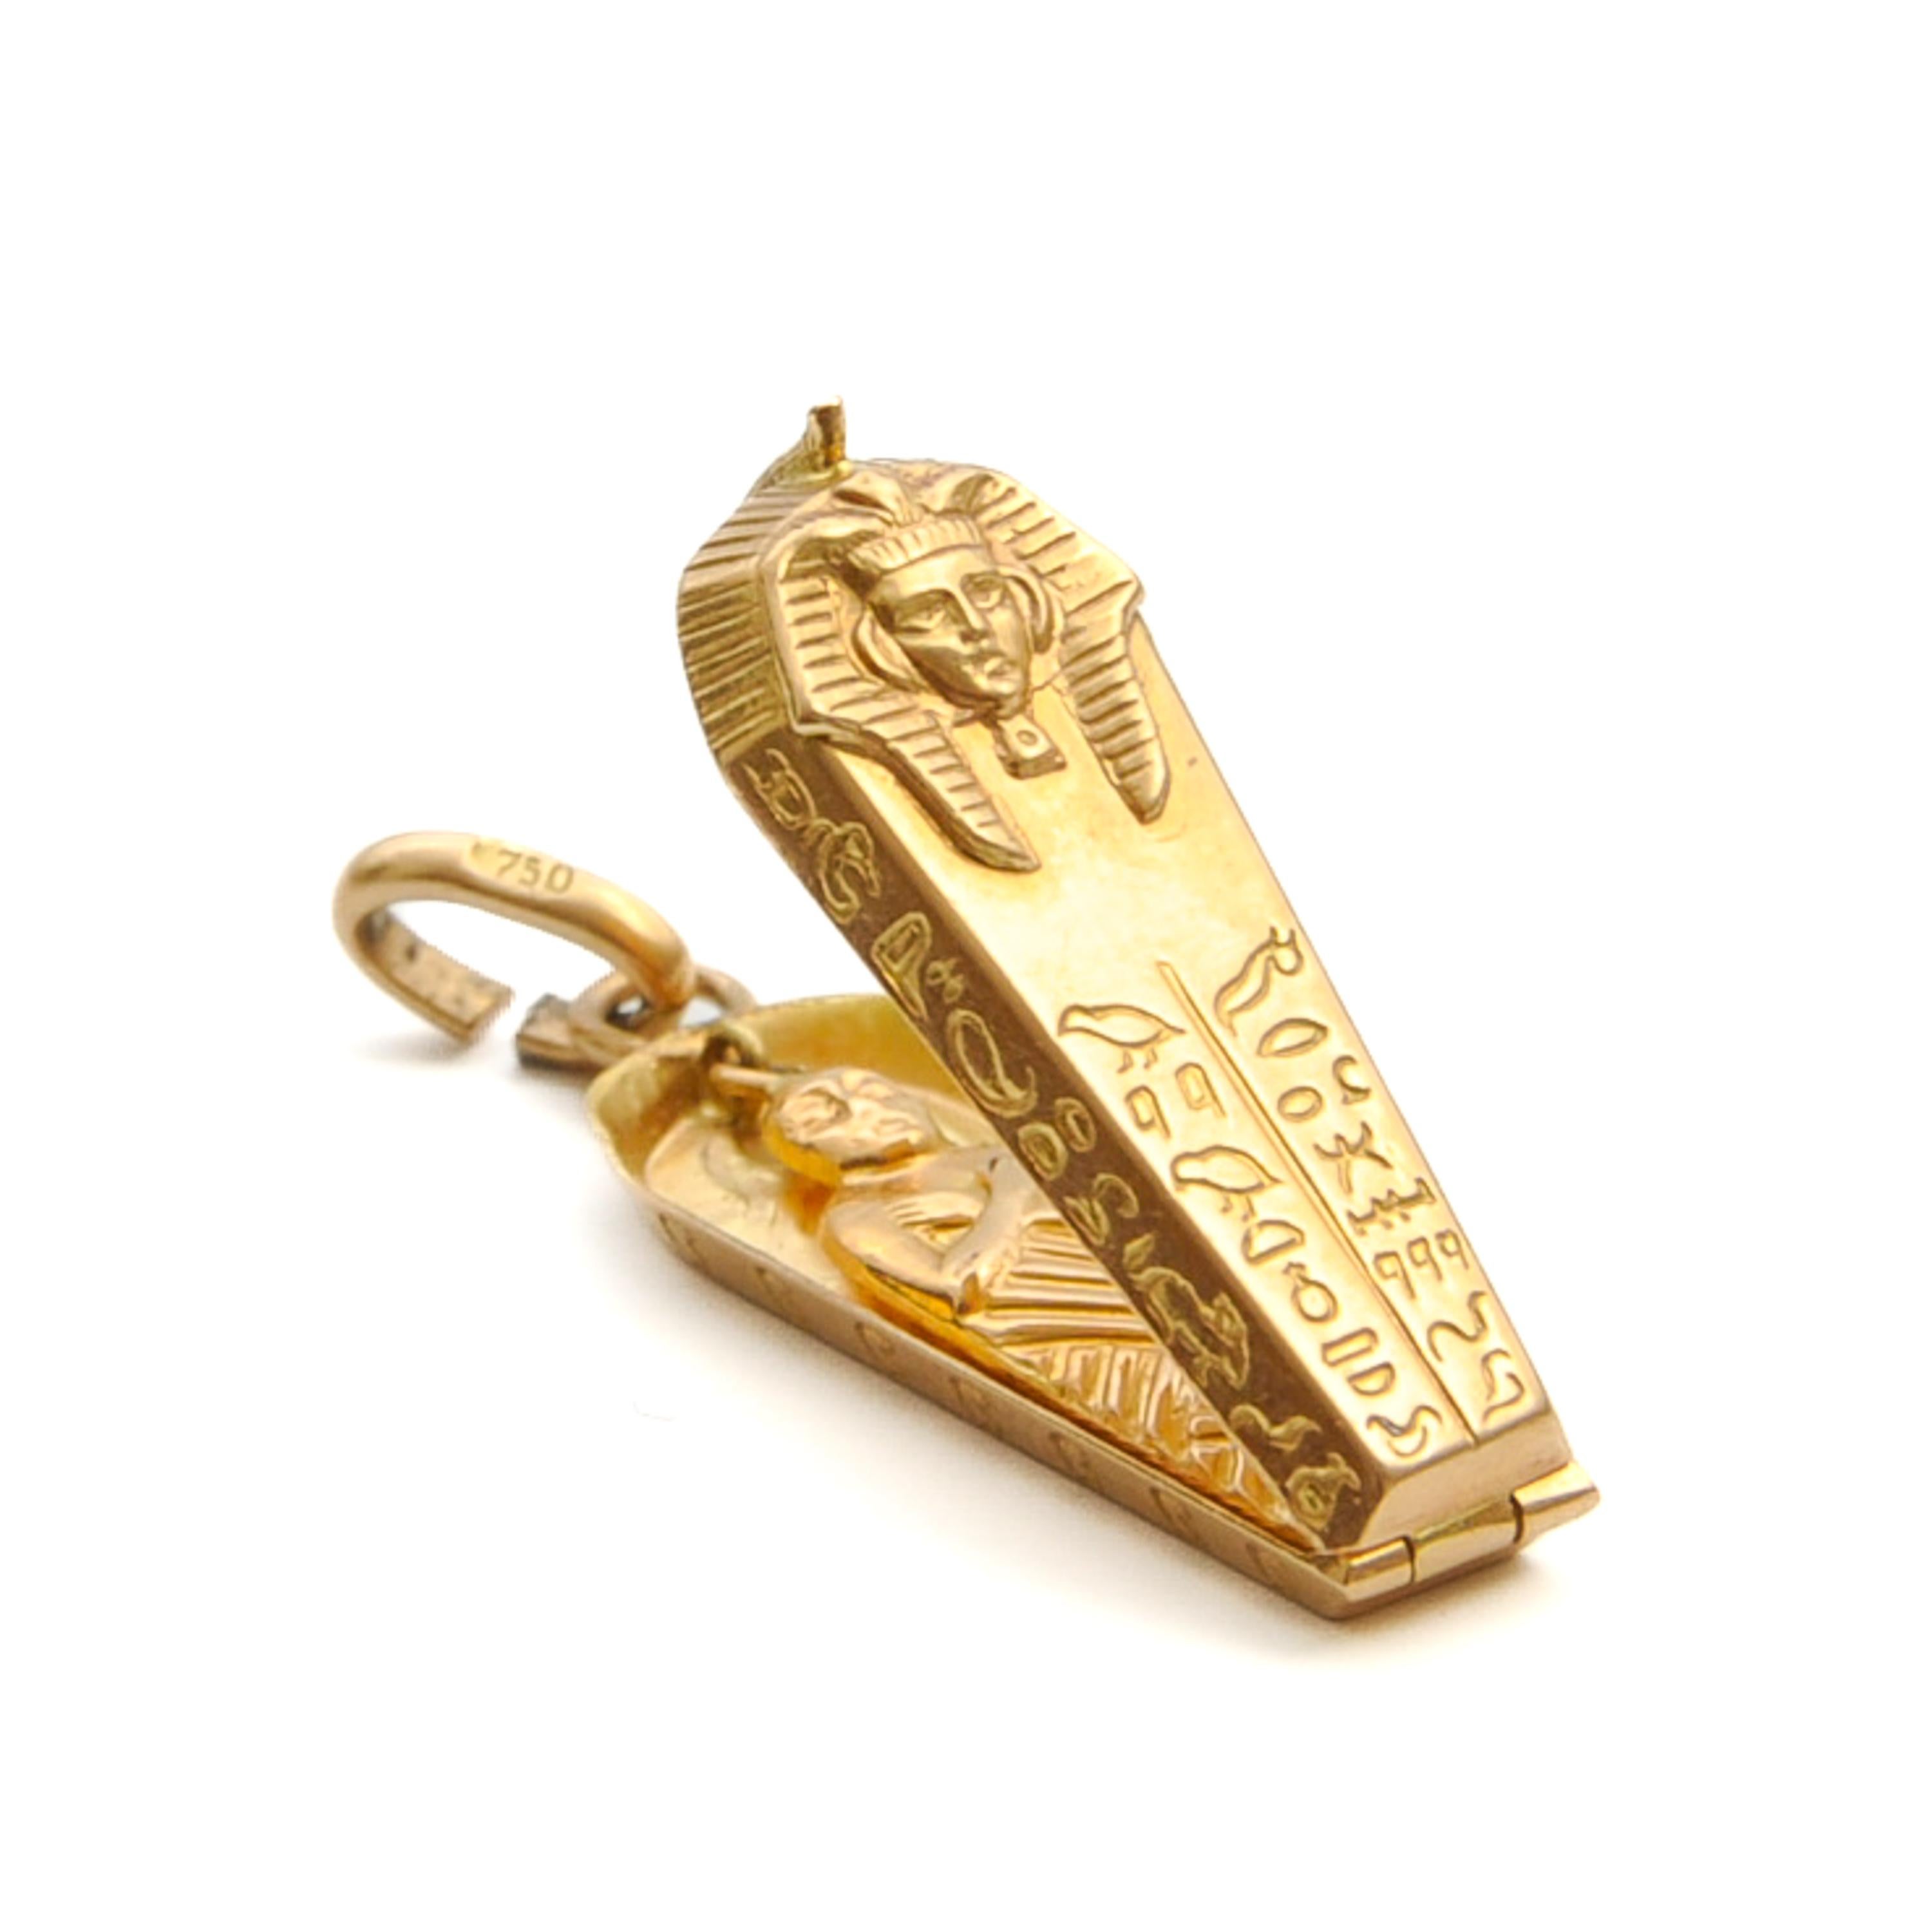 Vintage 18K Gold Pharaoh Tutankhamun Charm Pendant 3